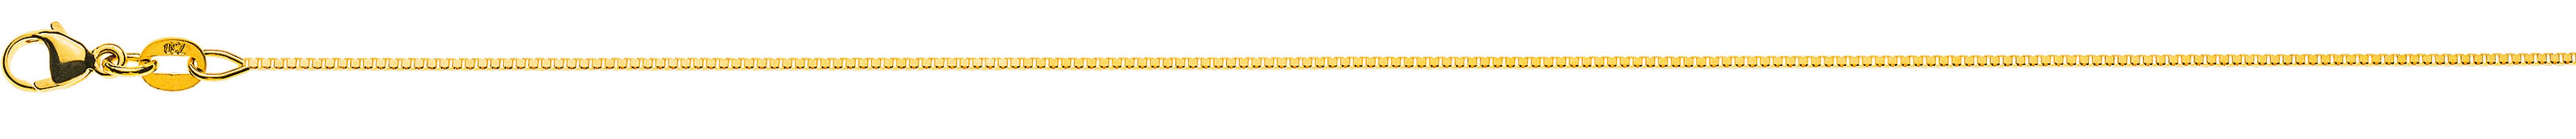 AURONOS Prestige Halskette Gelbgold 18K Venezianerkette diamantiert 40cm 0.8mm